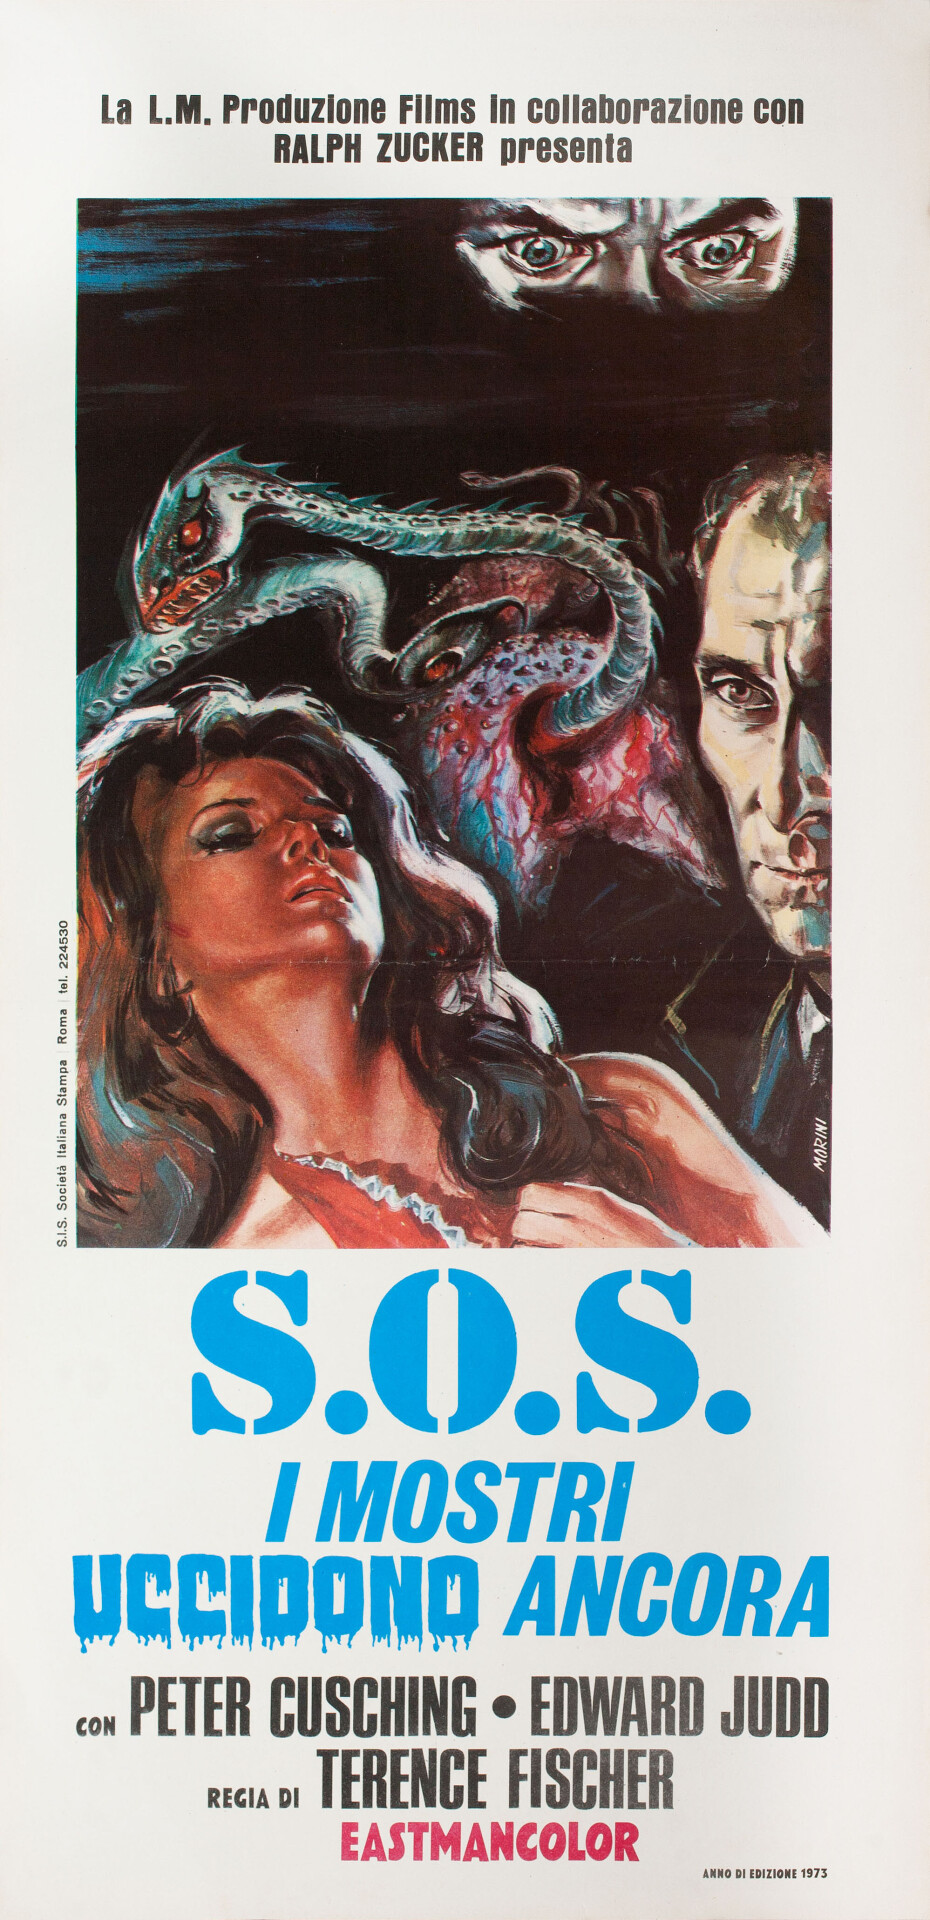 Остров Террора (Island of Terror, 1966), режиссёр Теренс Фишер, итальянский постер к фильму, автор Морини (ужасы, 1973 год)